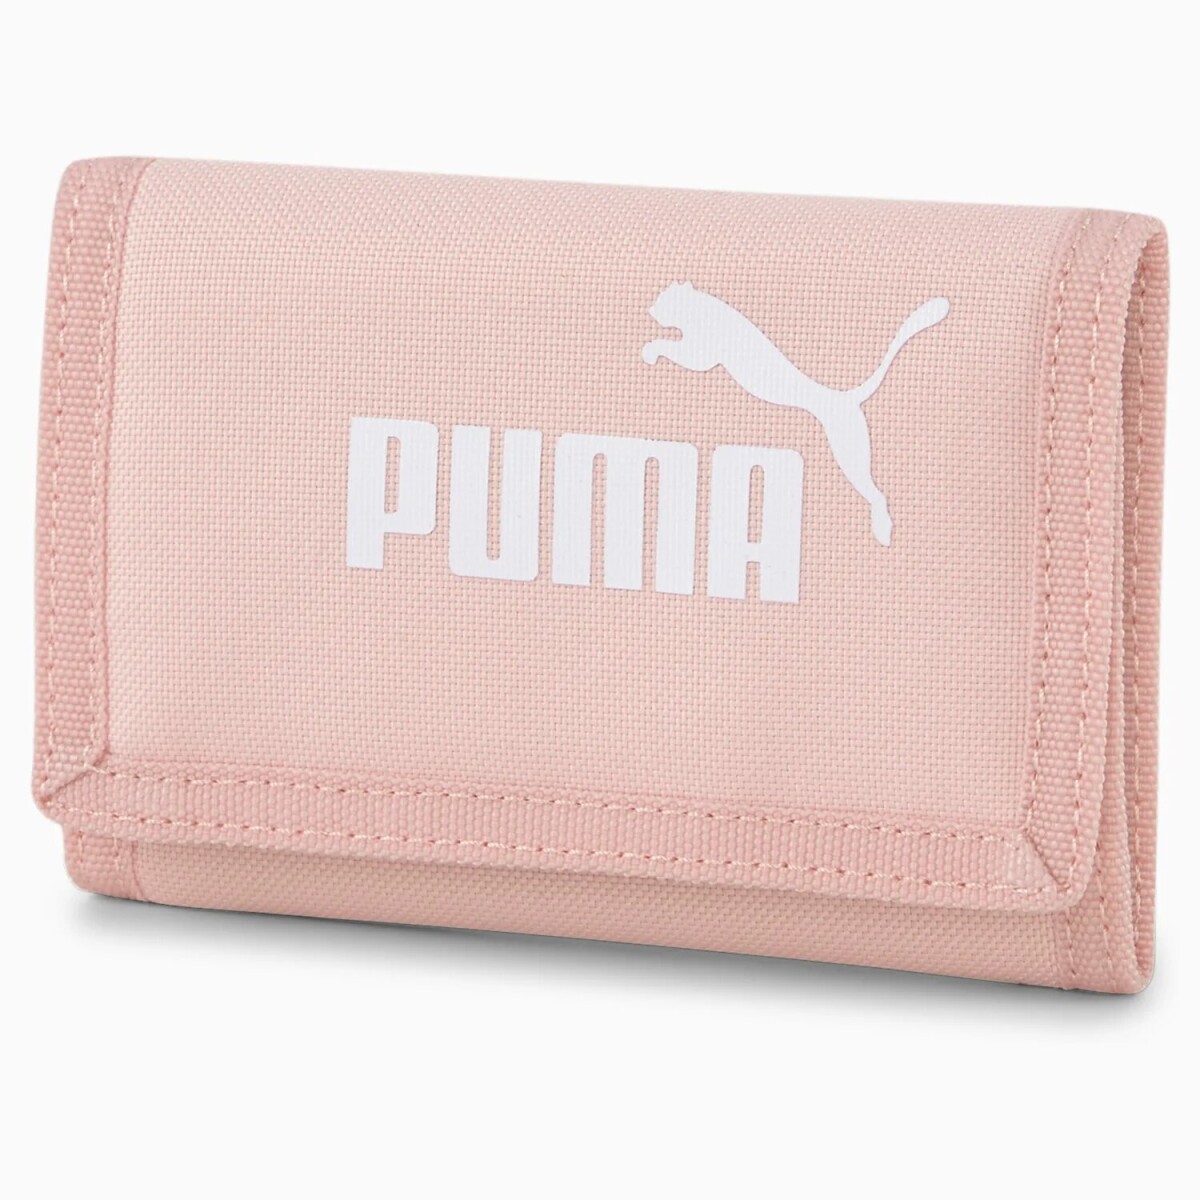 Billetera Puma Phase Wallet - S/C 